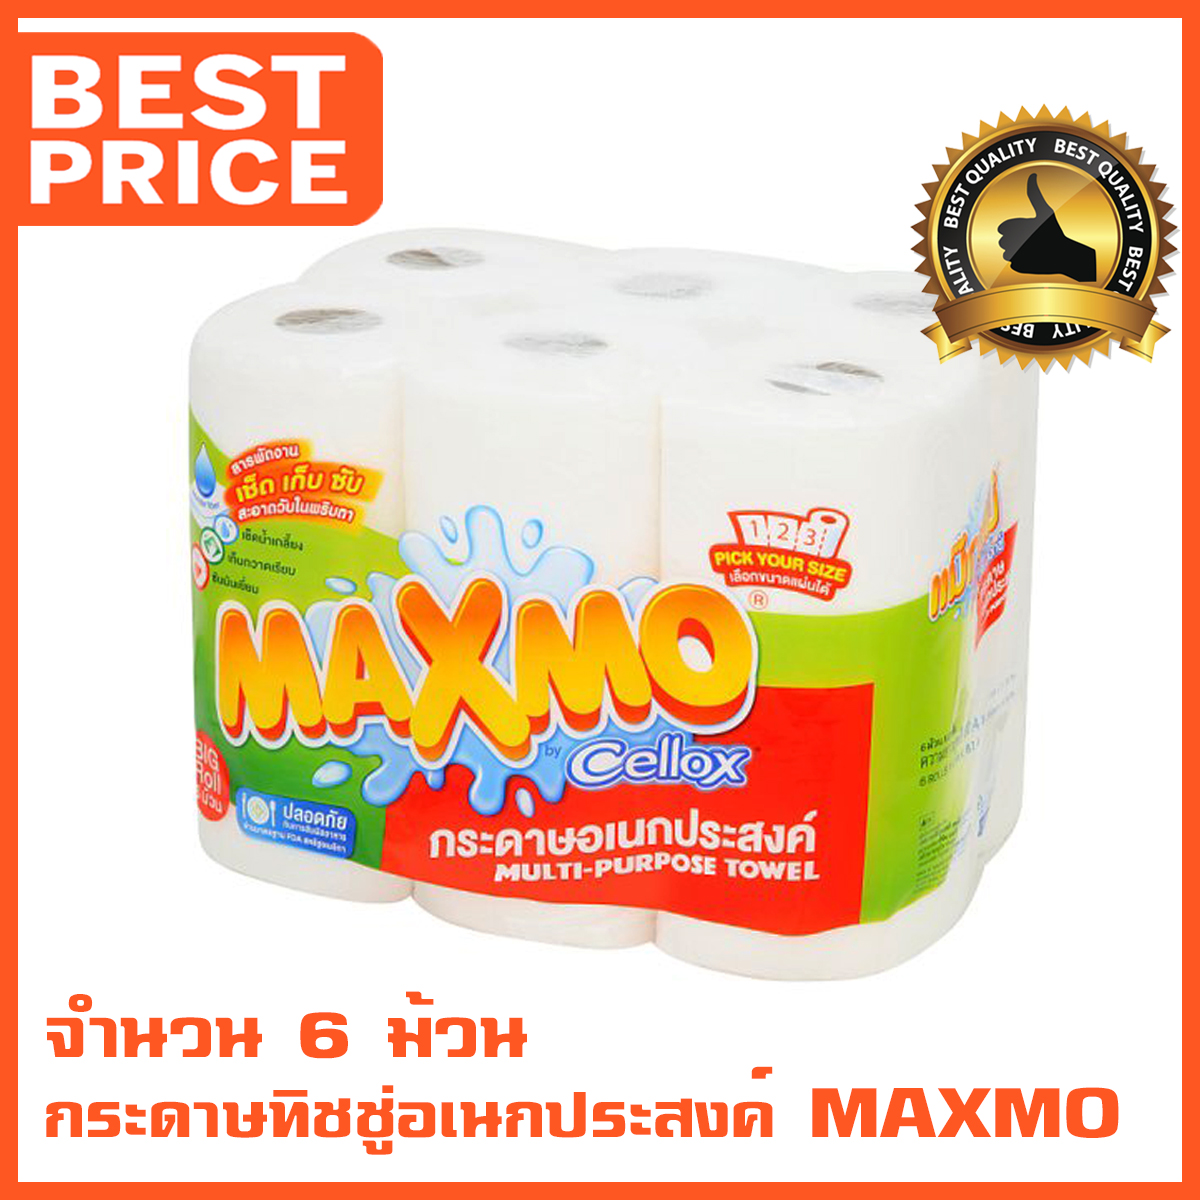 กระดาษซับ น้ำมัน MAXMO เหมาะสำหรับใช้ซับน้ำมันจากอาหารทอด เช็ดทำความสะอาดทั่วไป ทิชชู่ แม็กโม่ เช็ด เก็บ ซับ สารพัดคราบให้หายวับได้ในแผ่นเดียว จำนวน 6 ม้วน (Maxmo Kitchen Towel Roll)